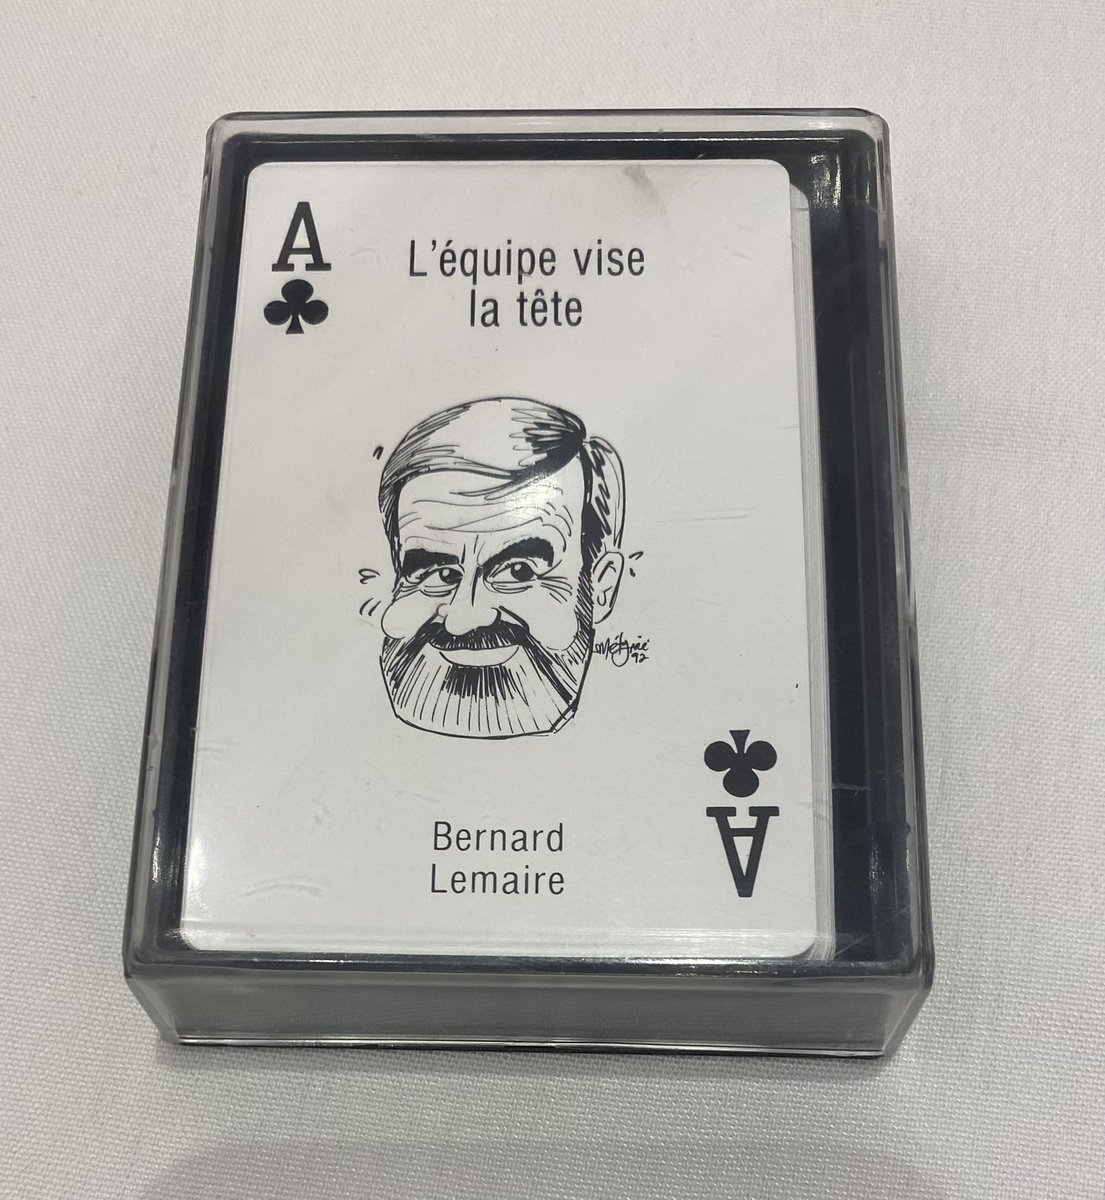 Merci à @yves_montigny qui m’a remis ce jeu de cartes provenant des trésors de son père. Celui-ci l’avait reçu comme employé à l’usine de @CascadesDD de Sept-Îles à l’occasion du 15e anniversaire de l’entreprise, fondée en 1964.